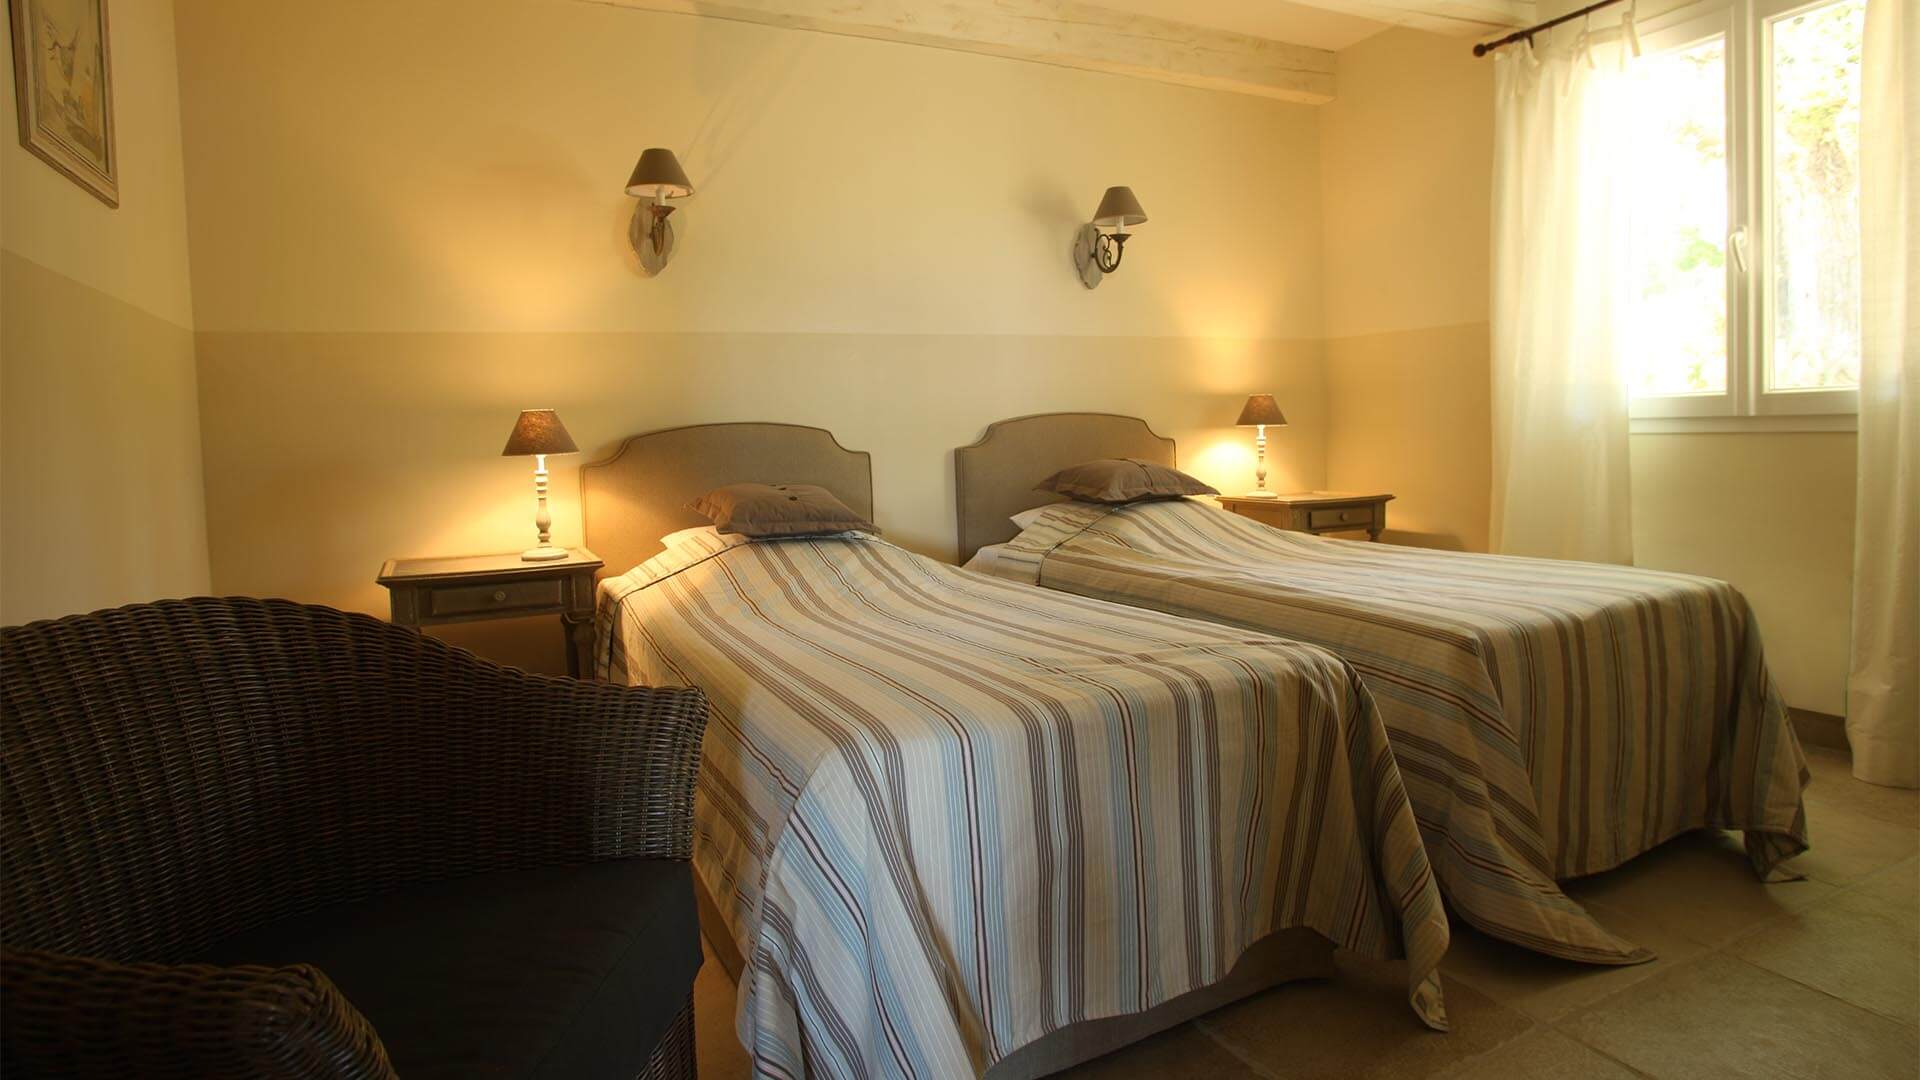 Location vacances Luberon | Villa le mûrier blanc | Chambre deux lits simples